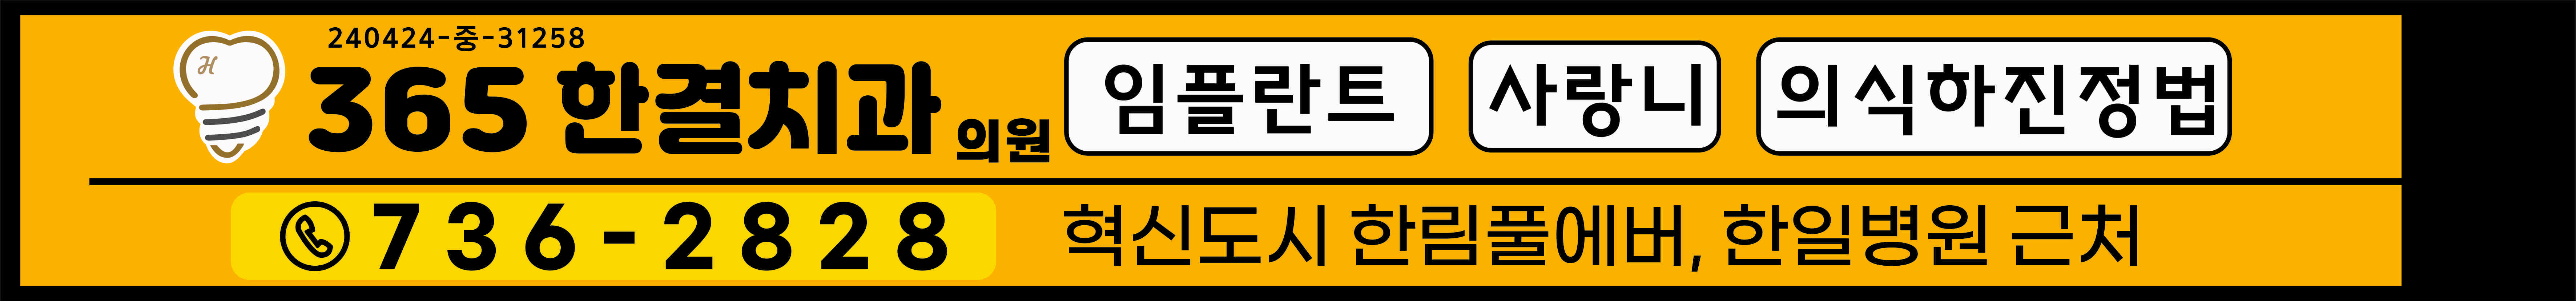 삼흥인쇄광고